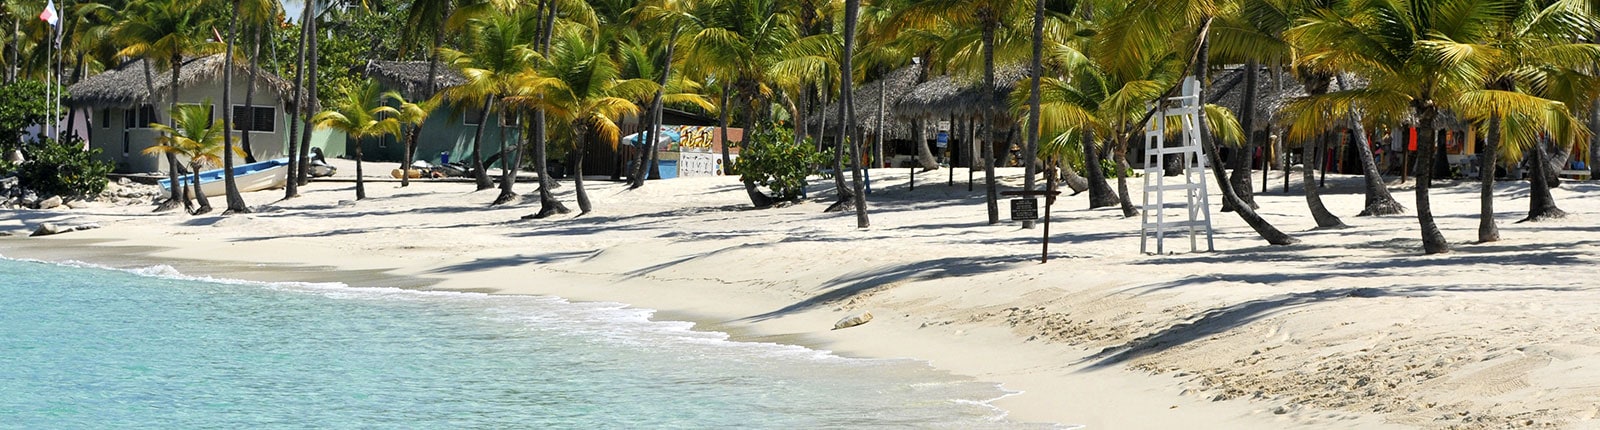 Tree-lined white sand beach in La Romana, Dominican Republic